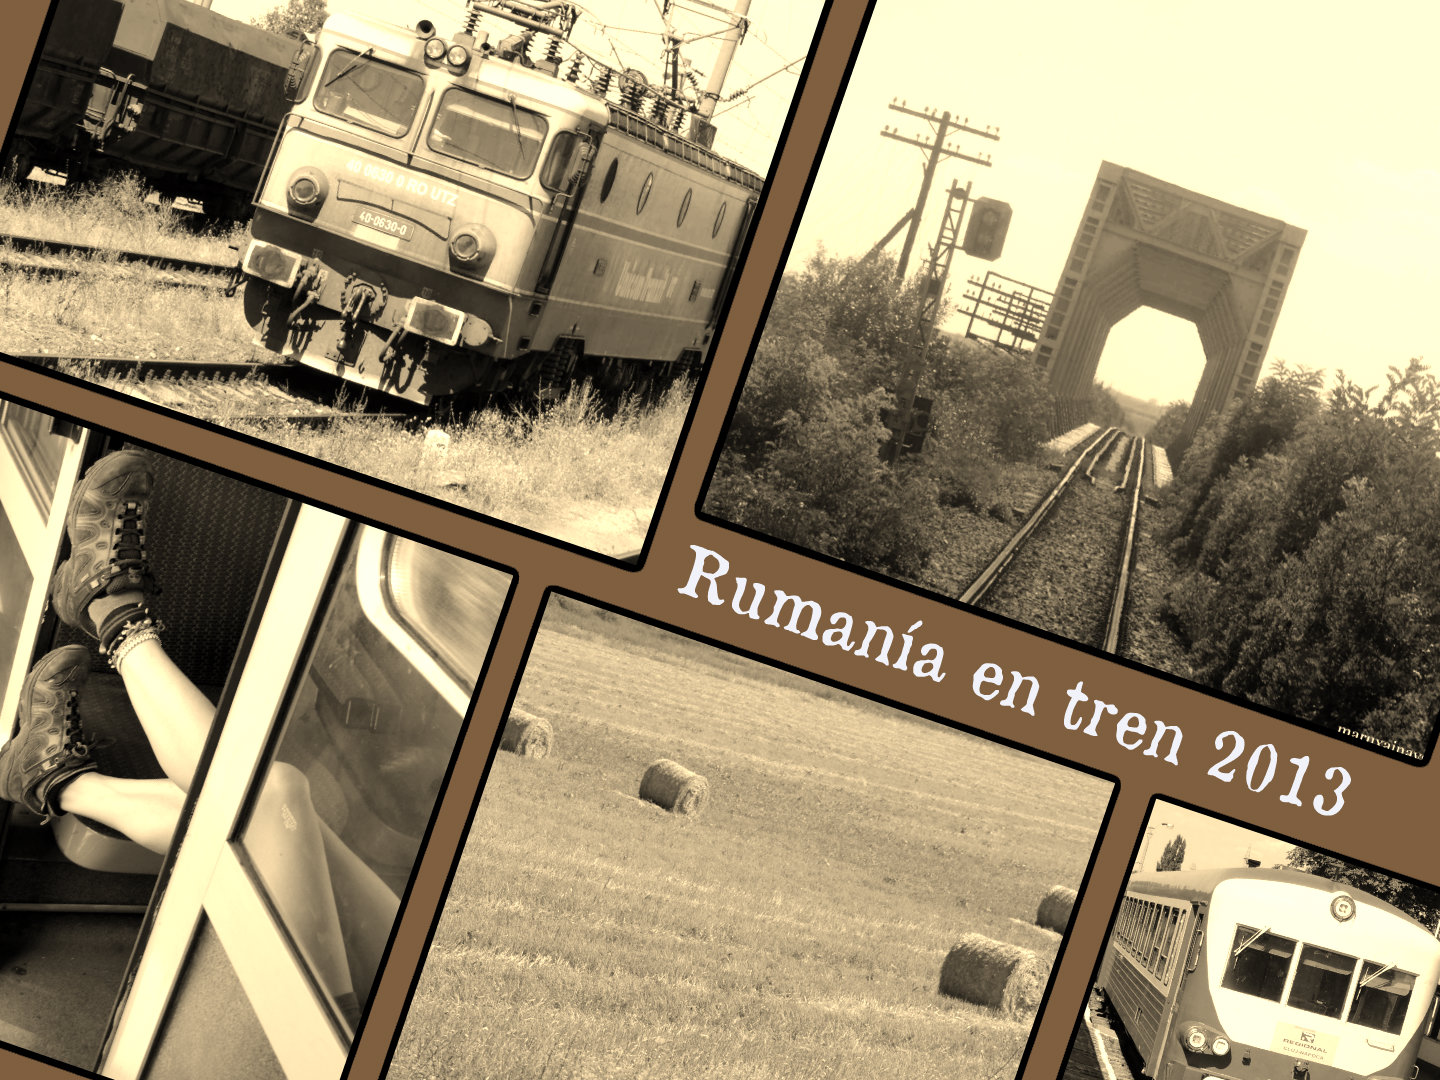 Rumania en tren